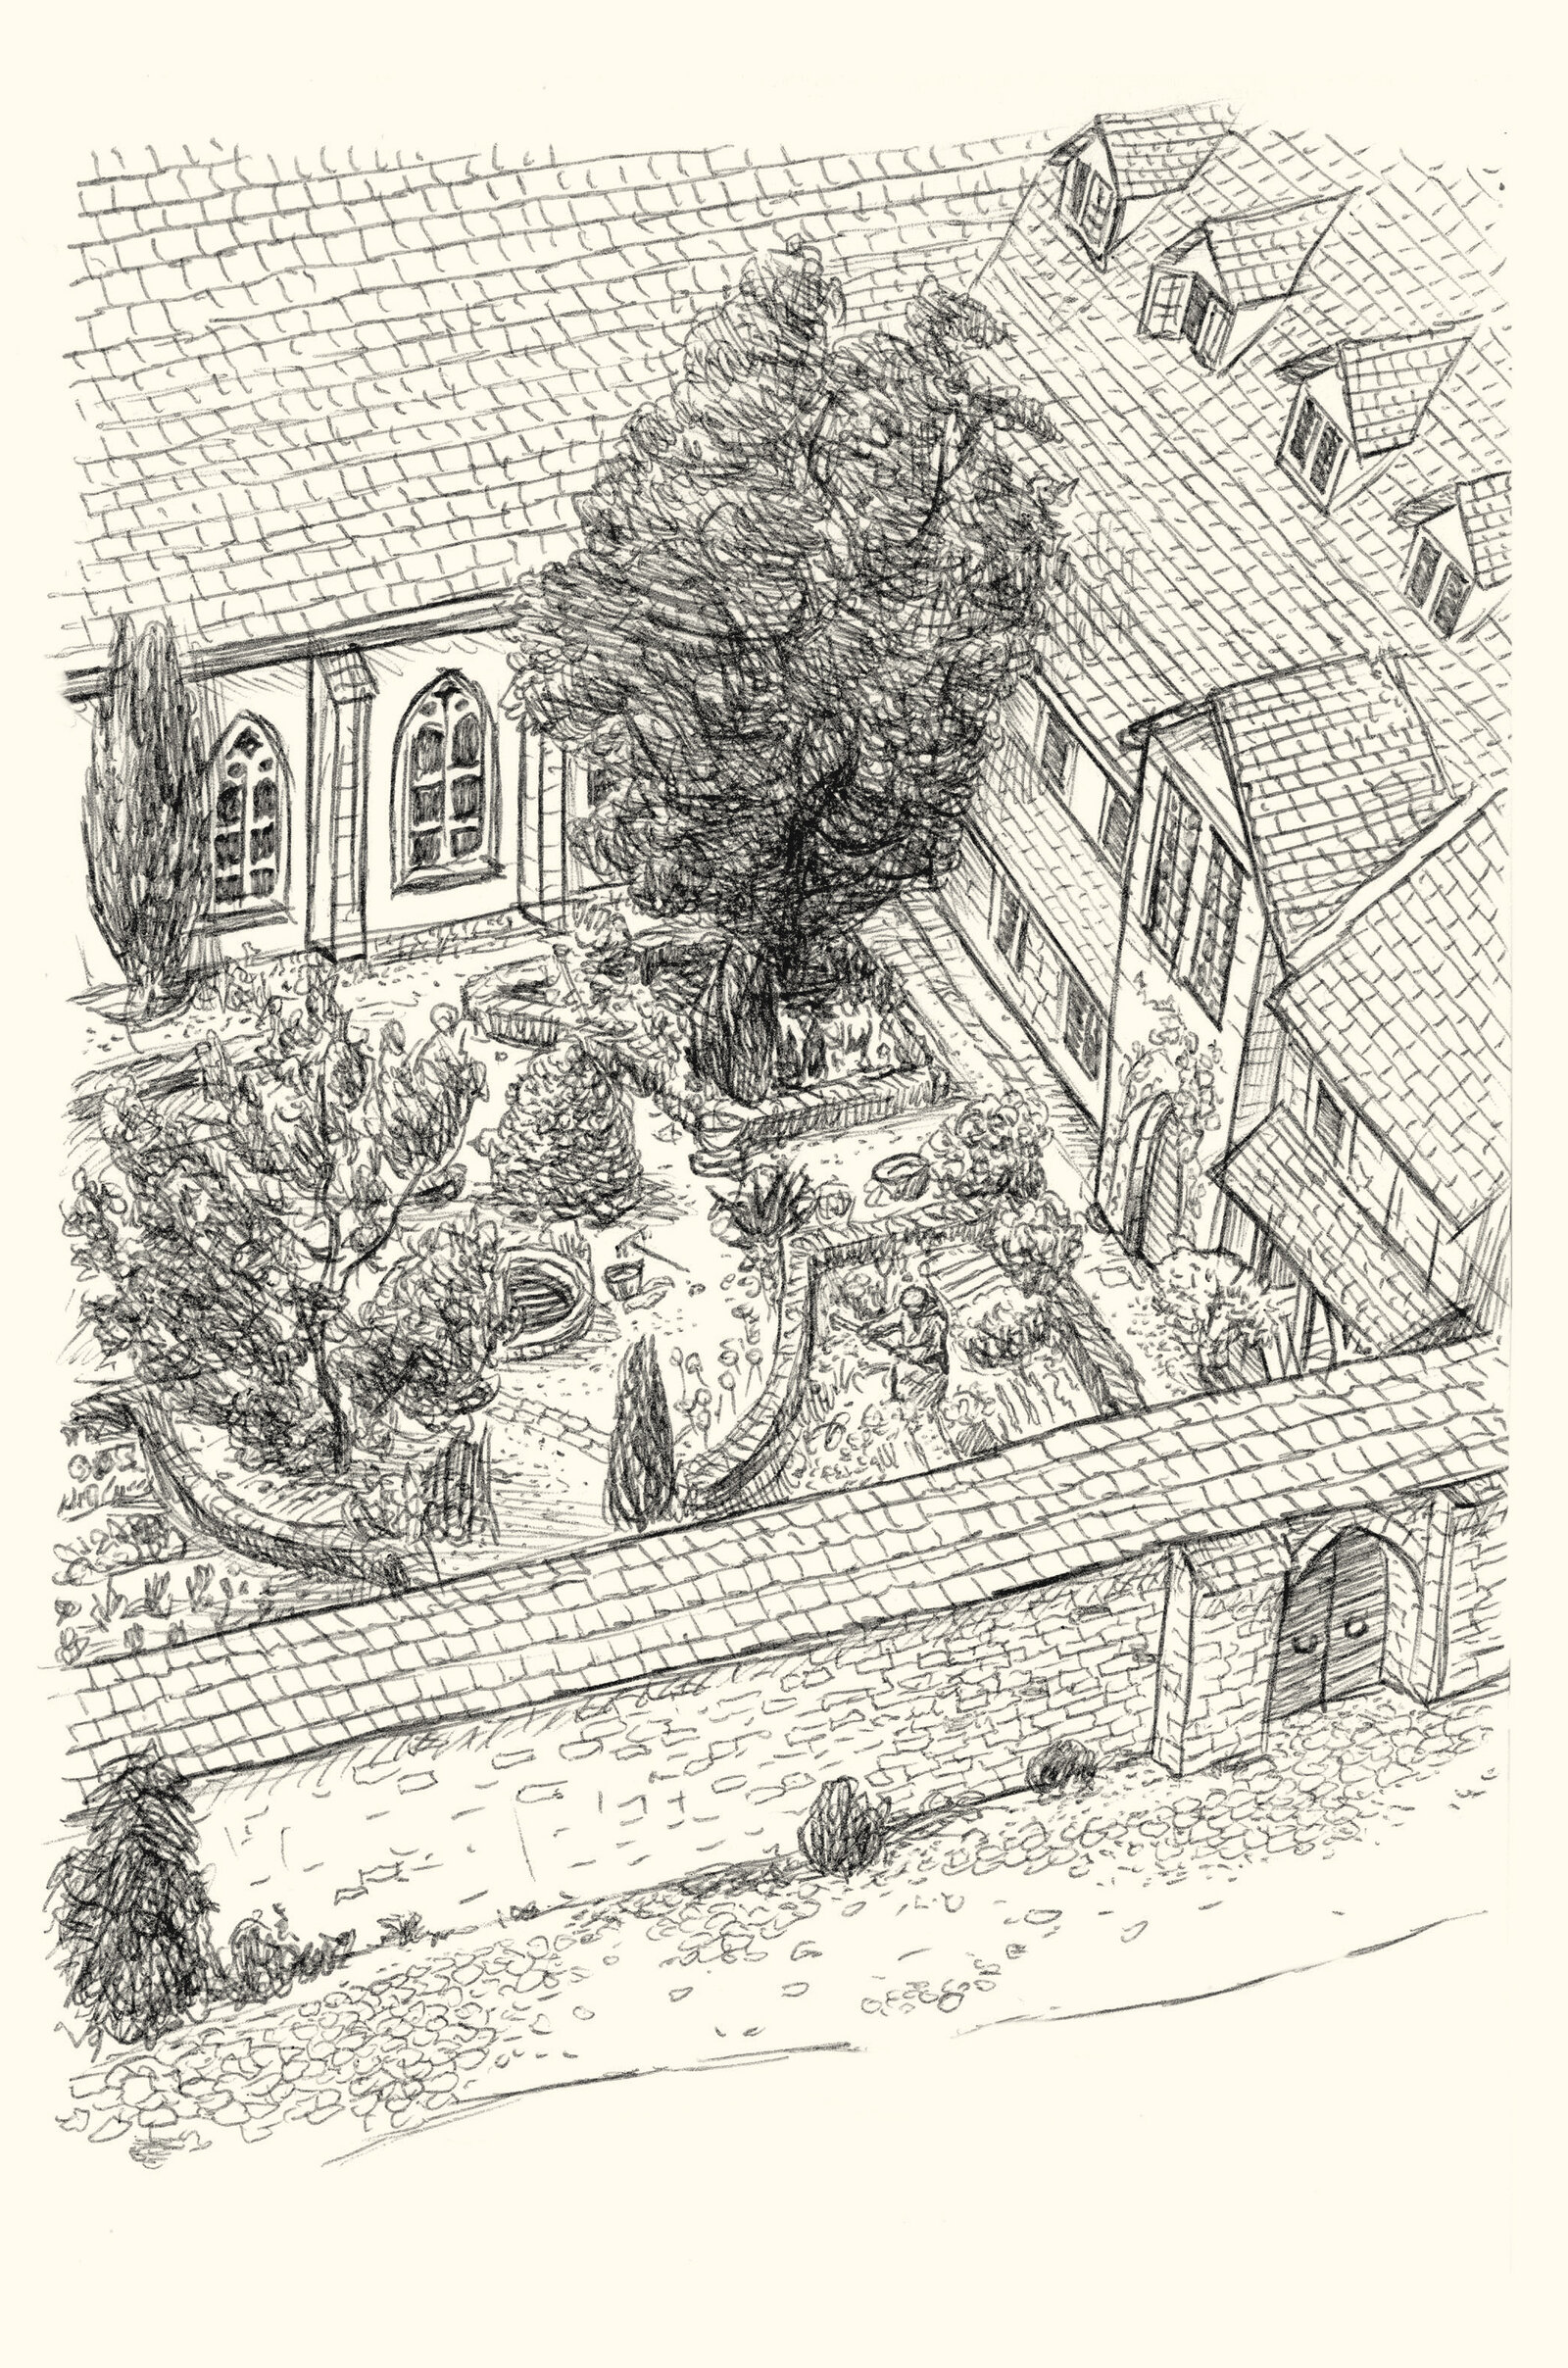 oculus-illustration-buch-weihnachten-lagerloef-christrose-zeichnung-klostergarten